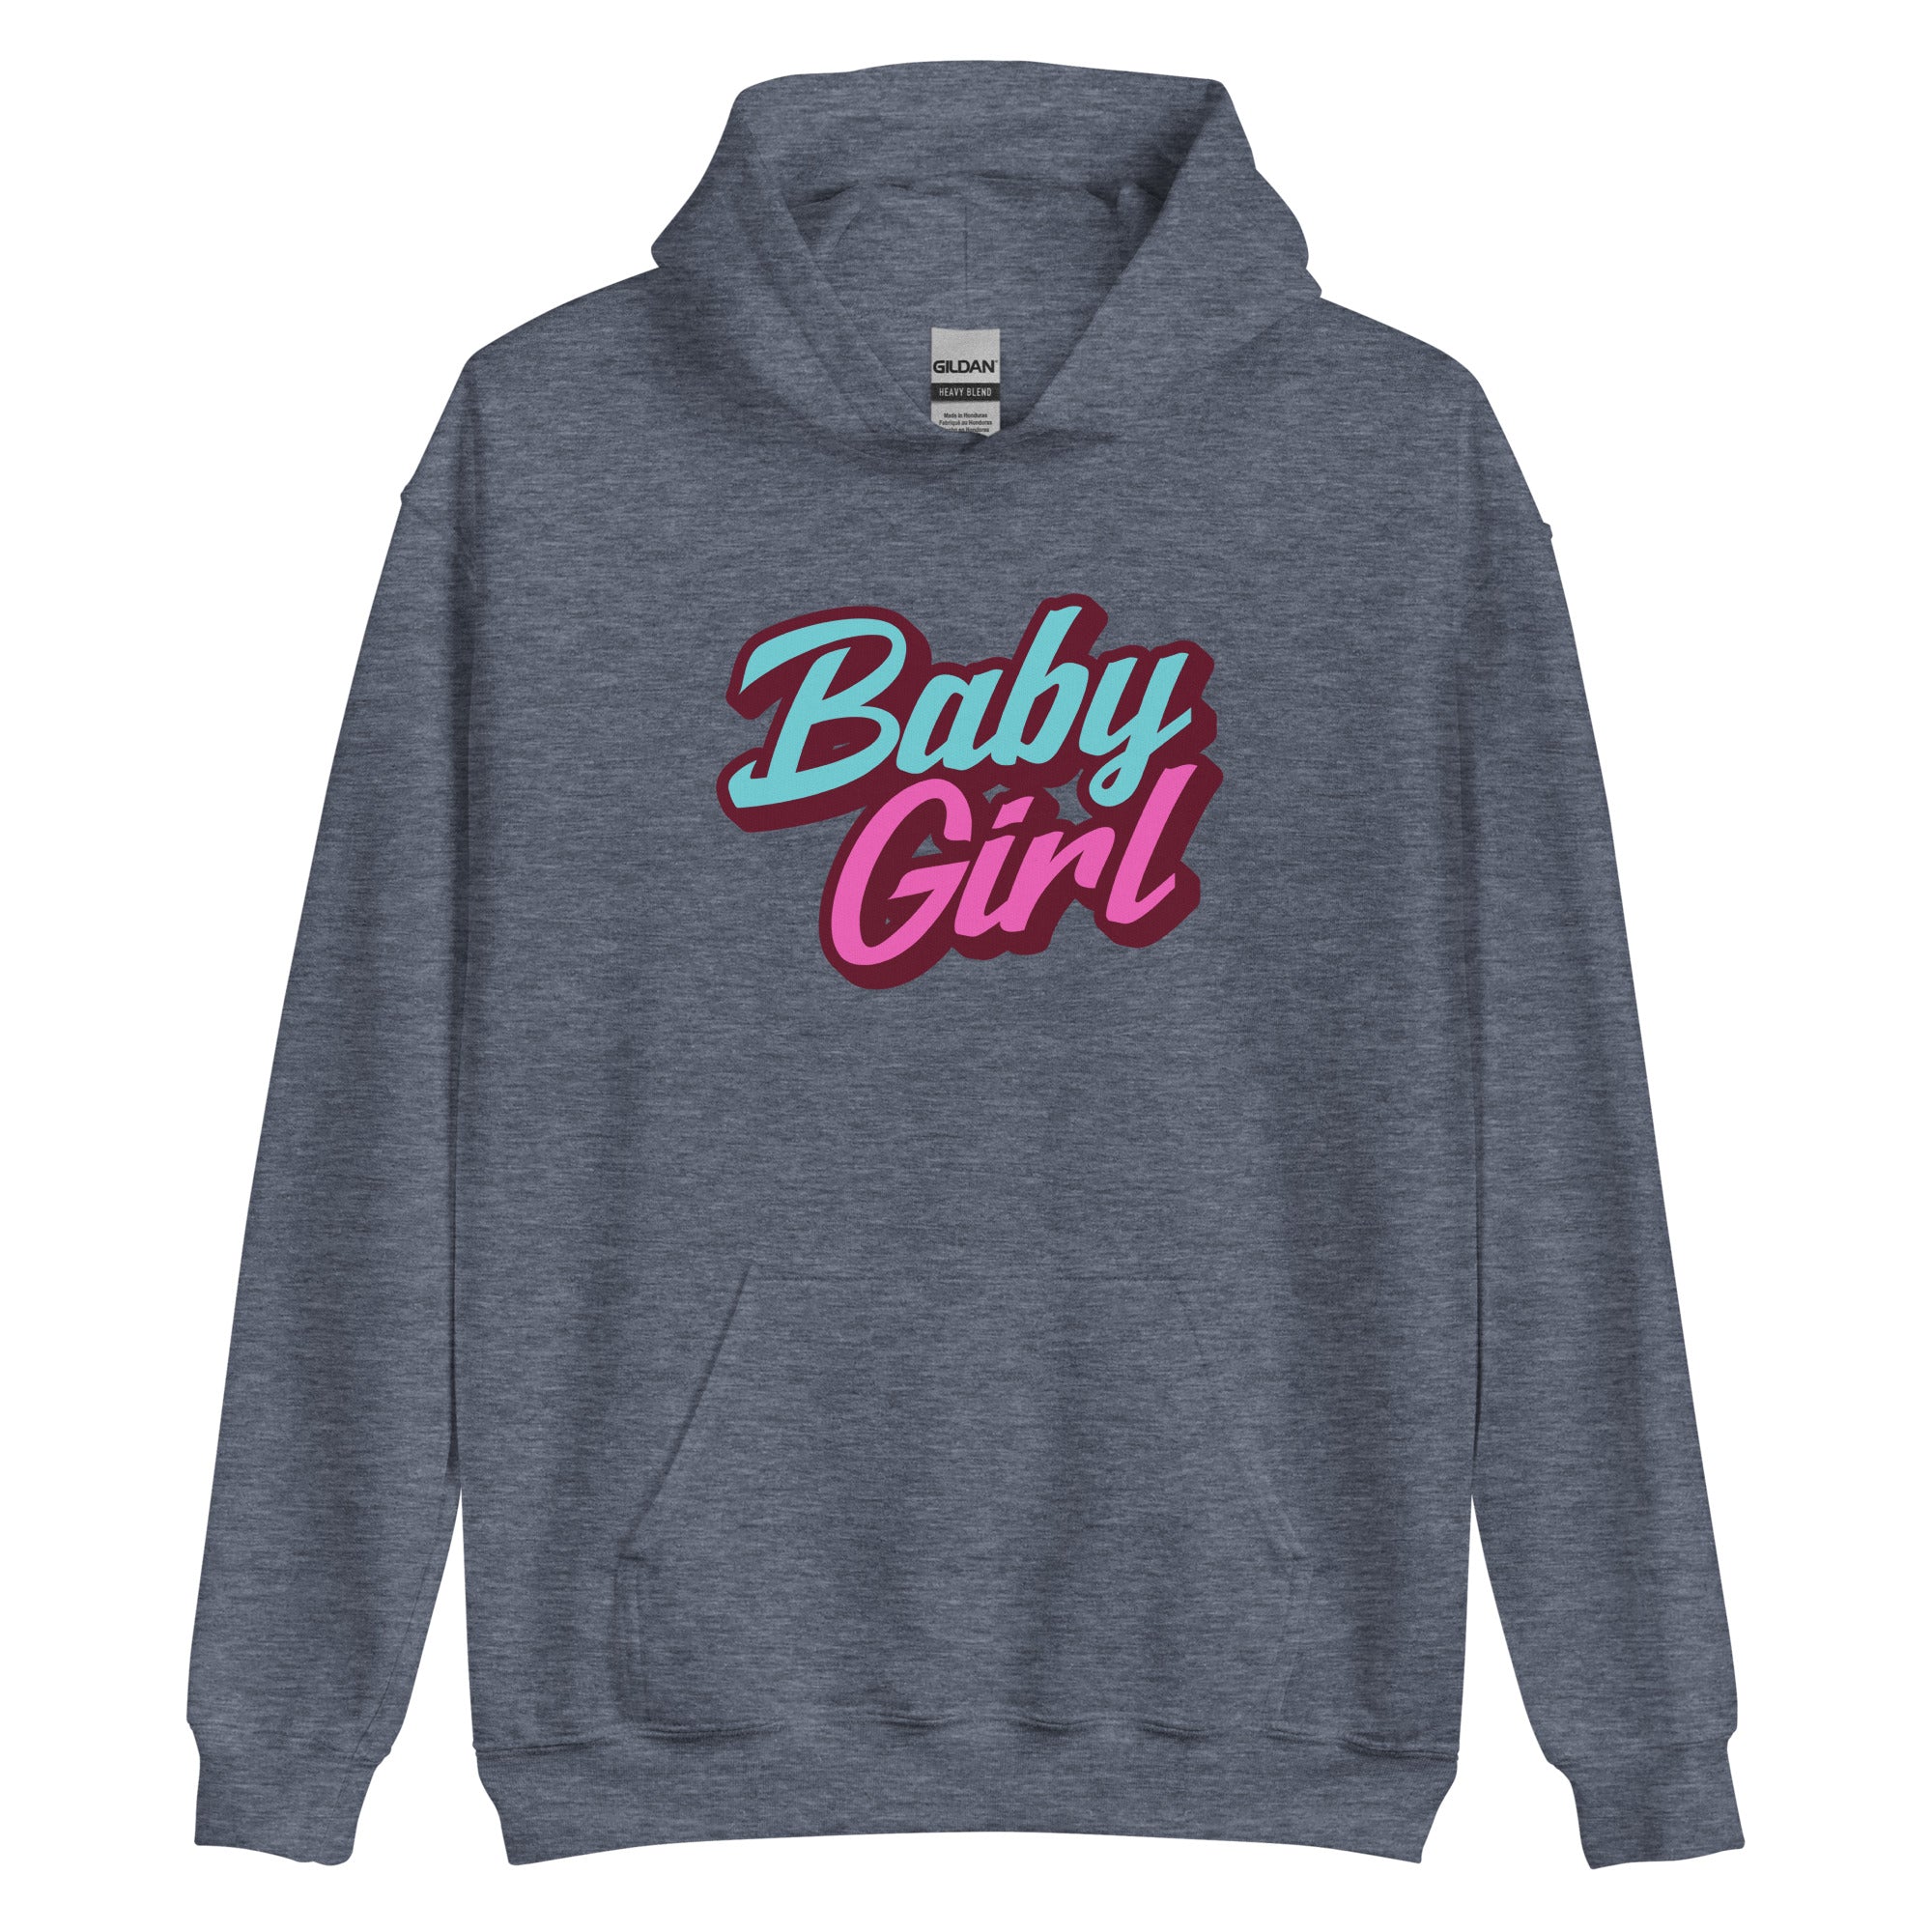 Baby Girl Hoodie | Cute Girl Pullover Hoodie for Women